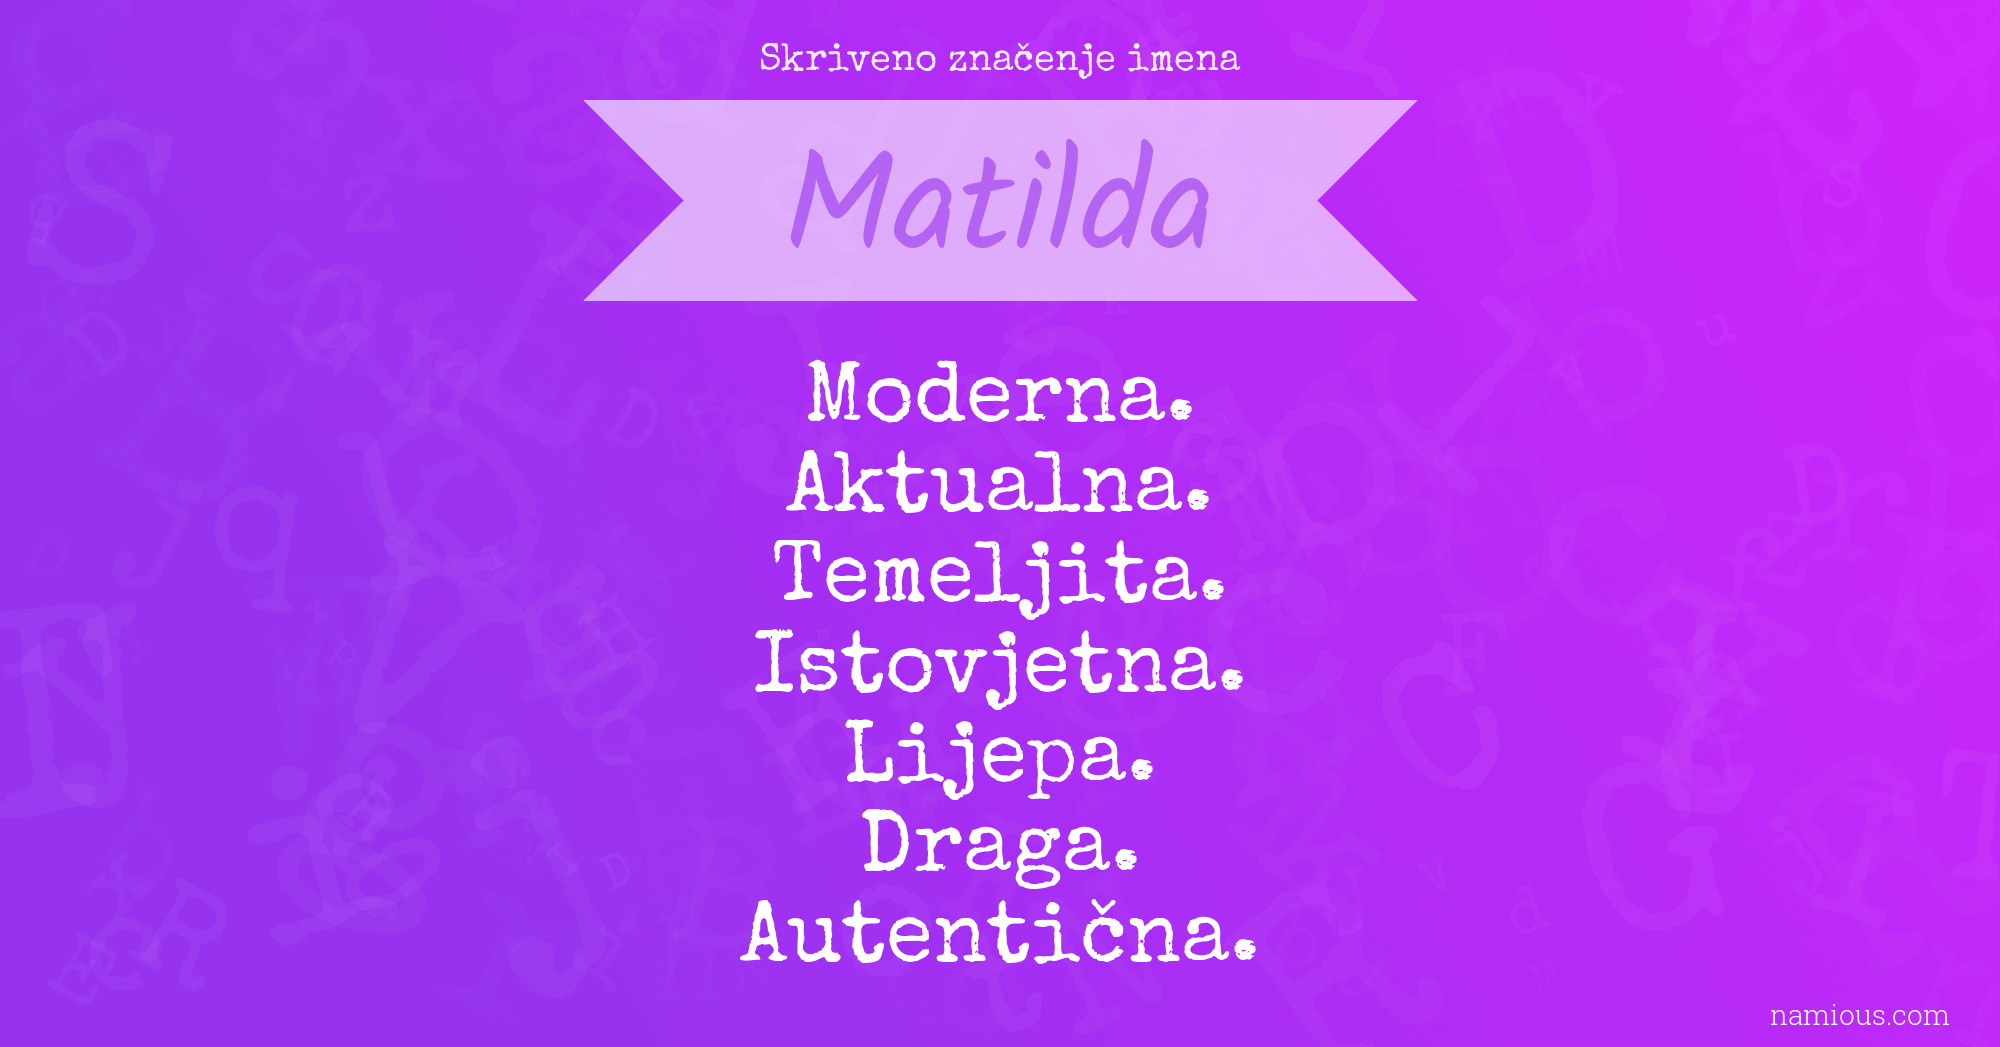 Skriveno značenje imena Matilda